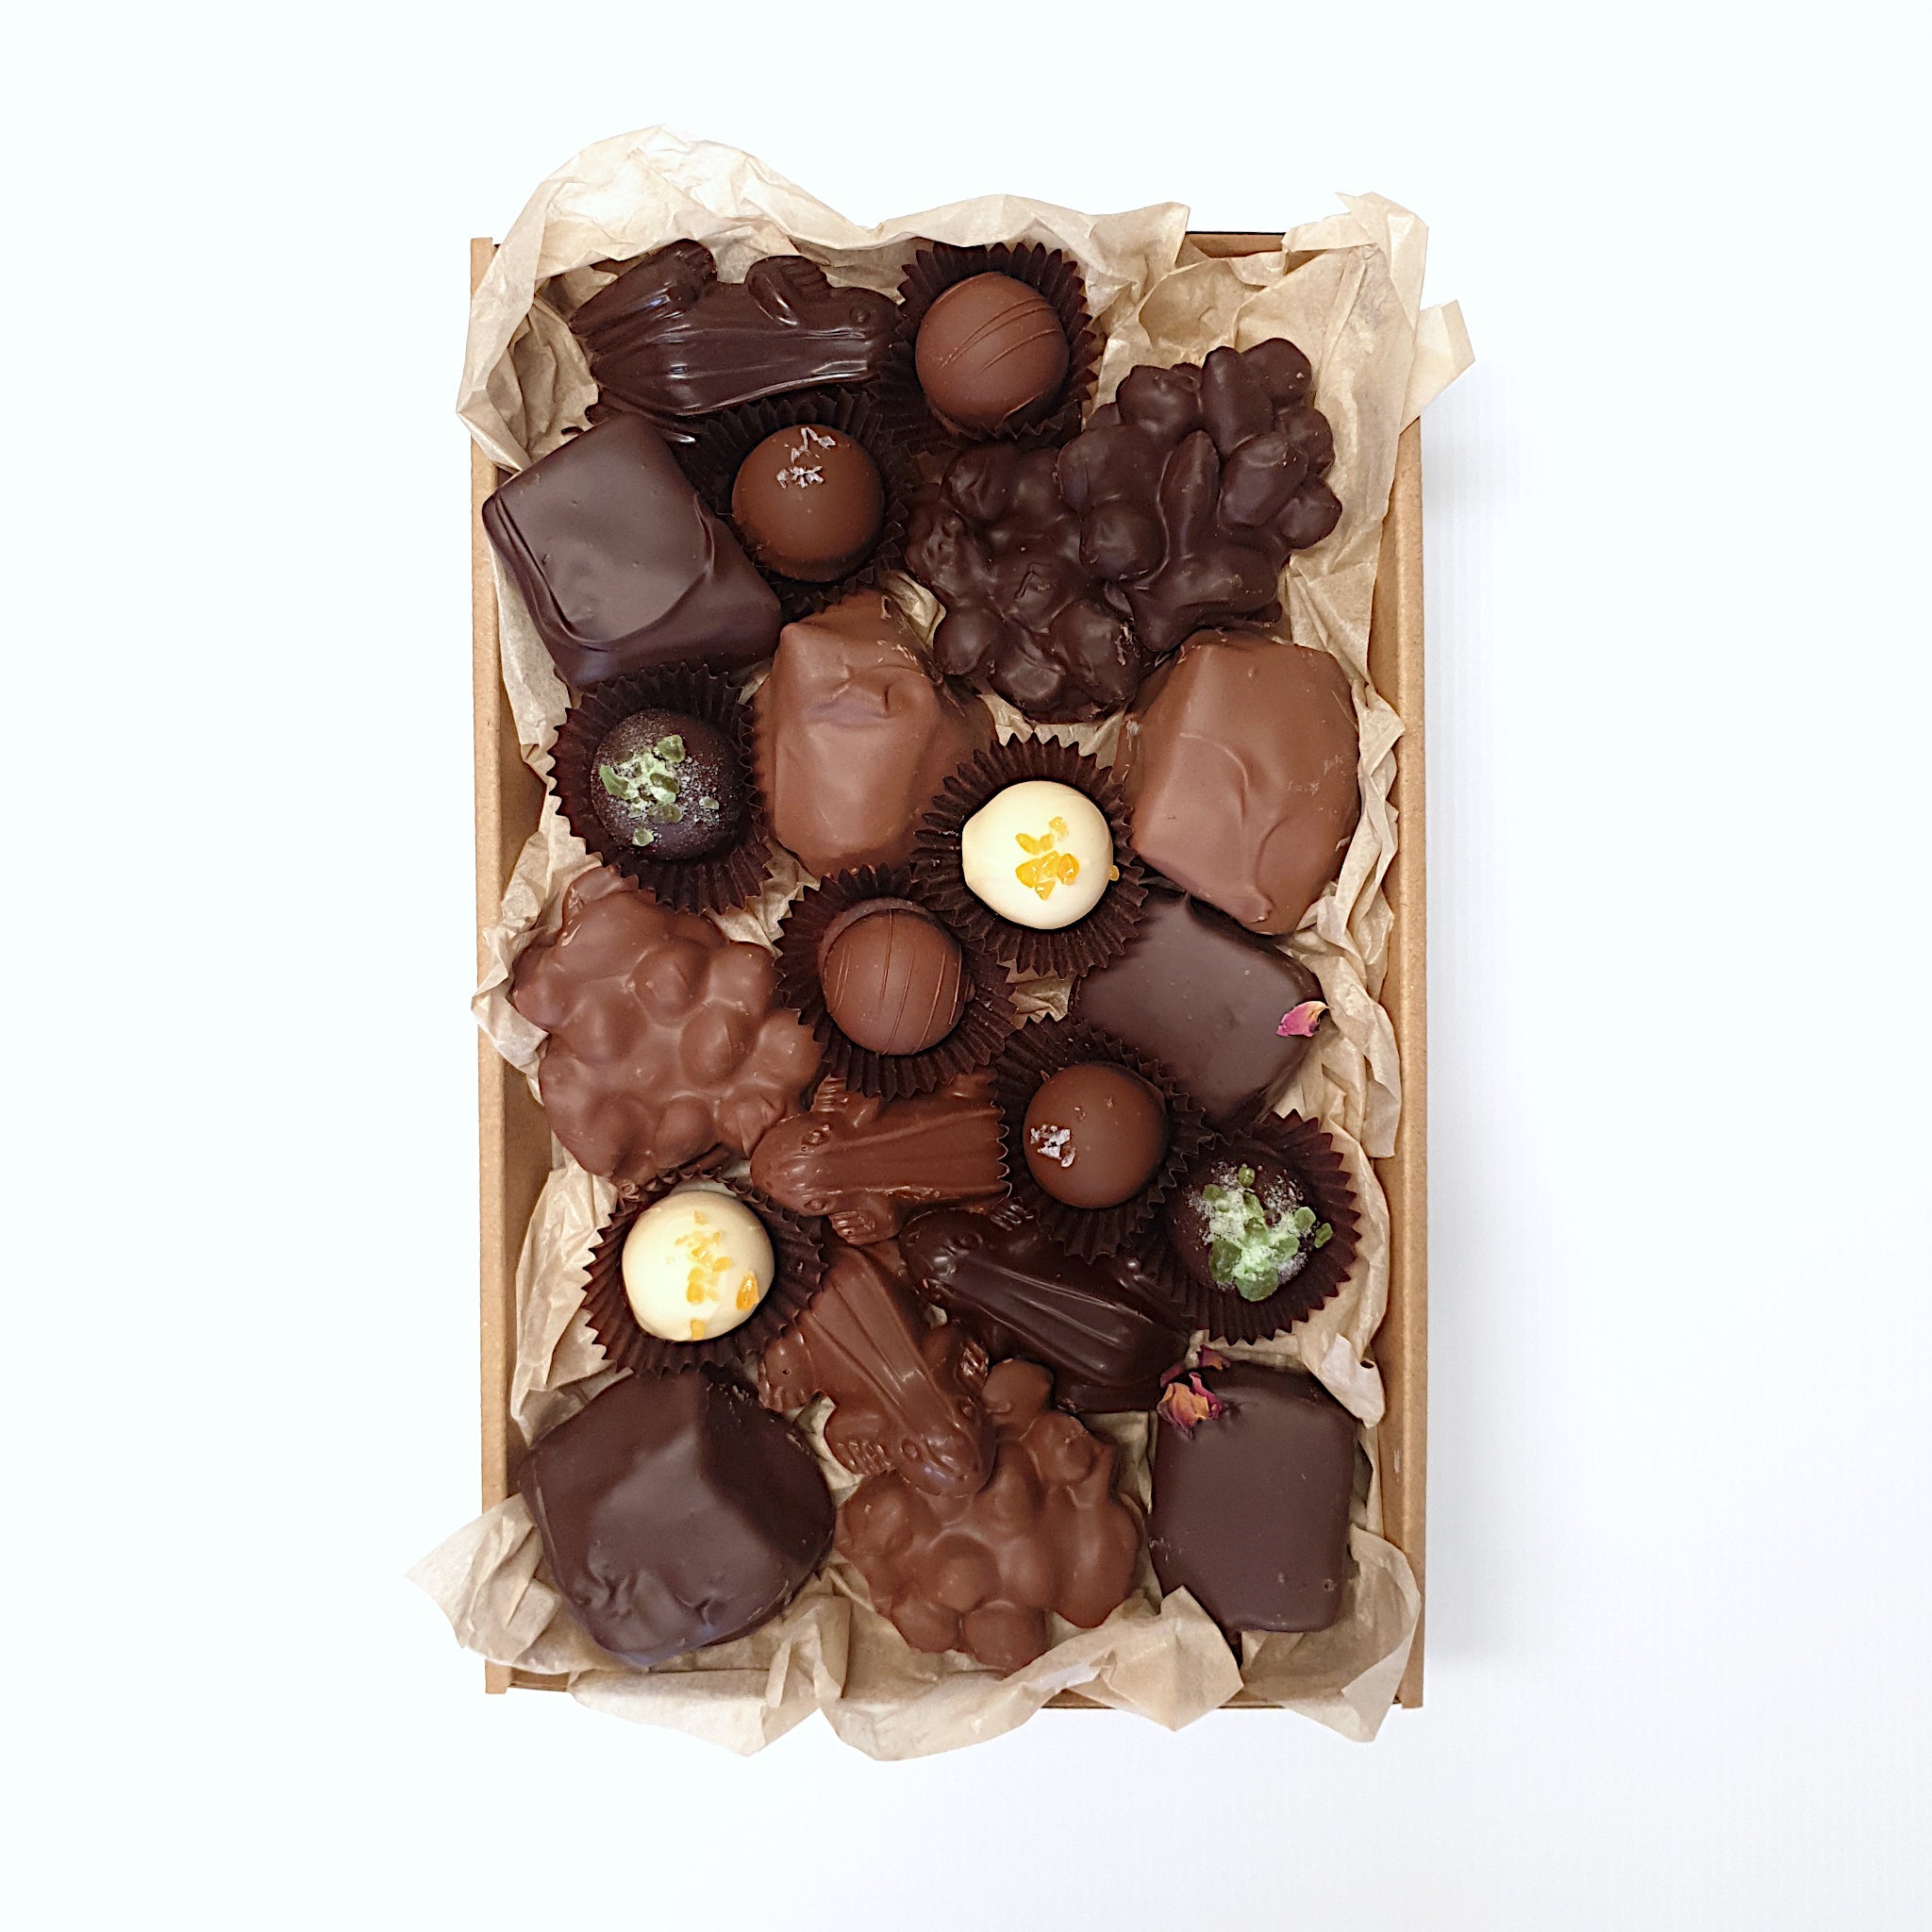 Sampler Mixed Chocolate Box